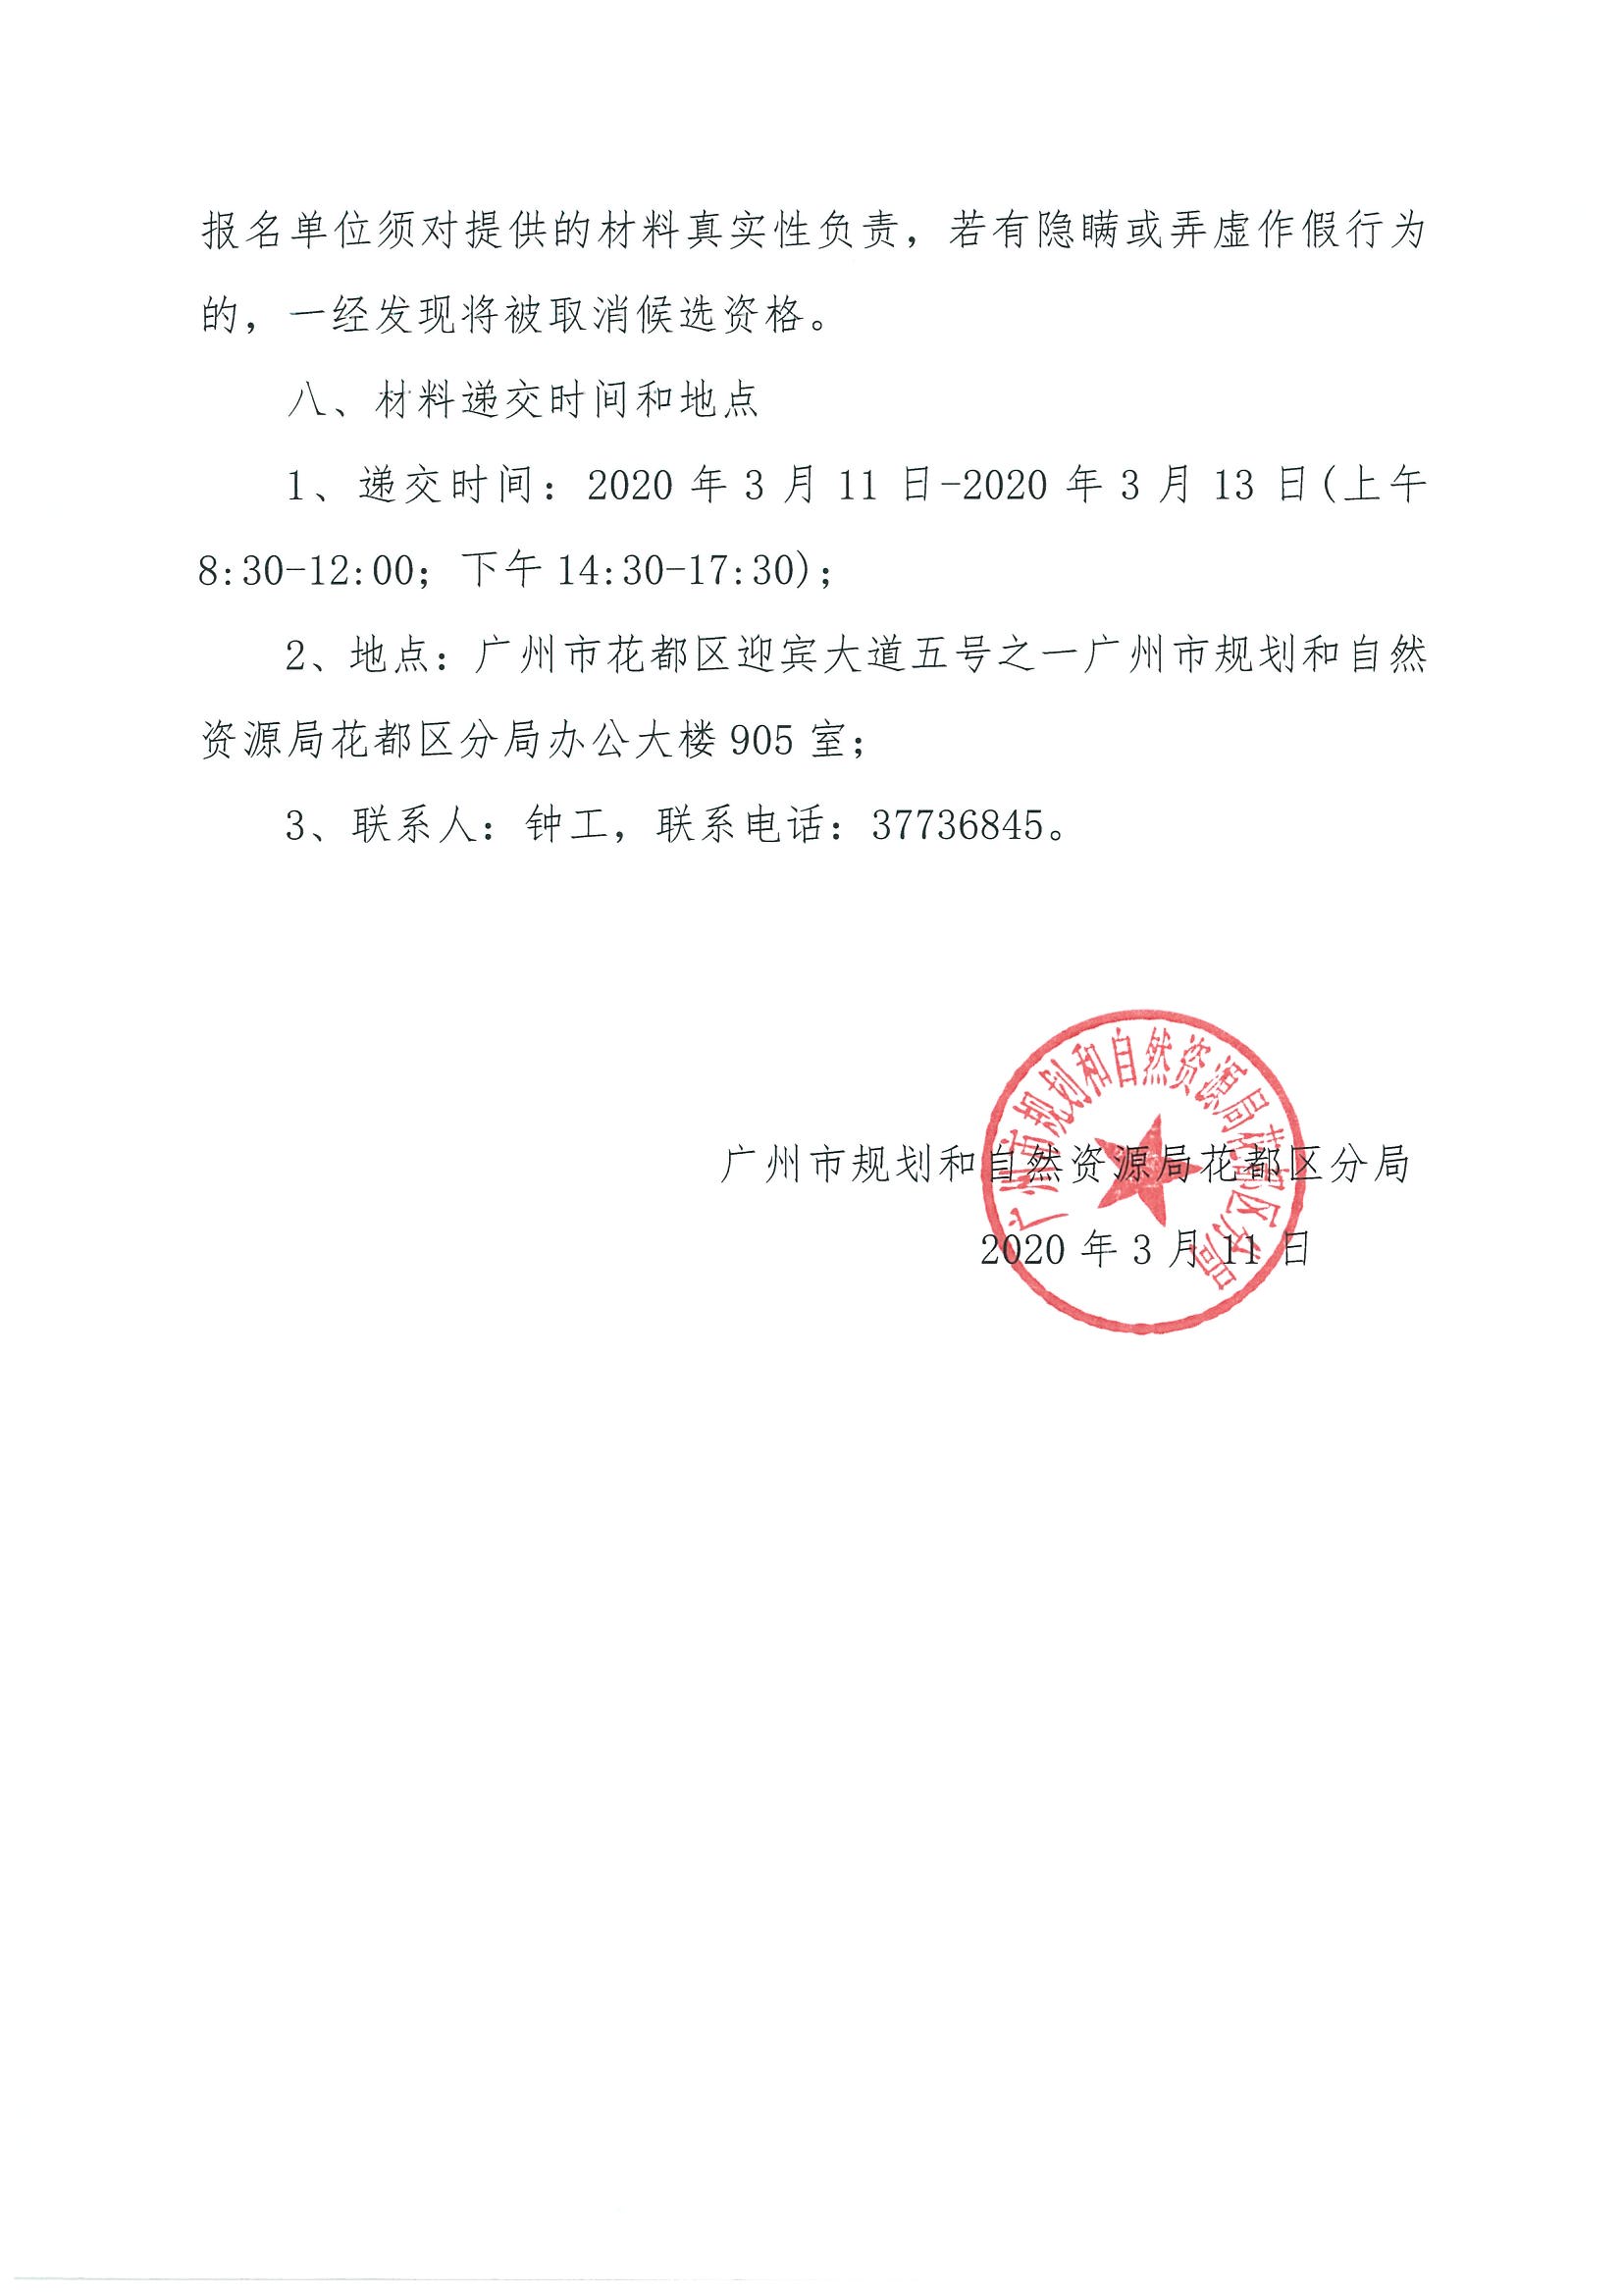 广州市规划和自然资源局花都区分局关于聘请招标代理的公告_页面_3.jpg